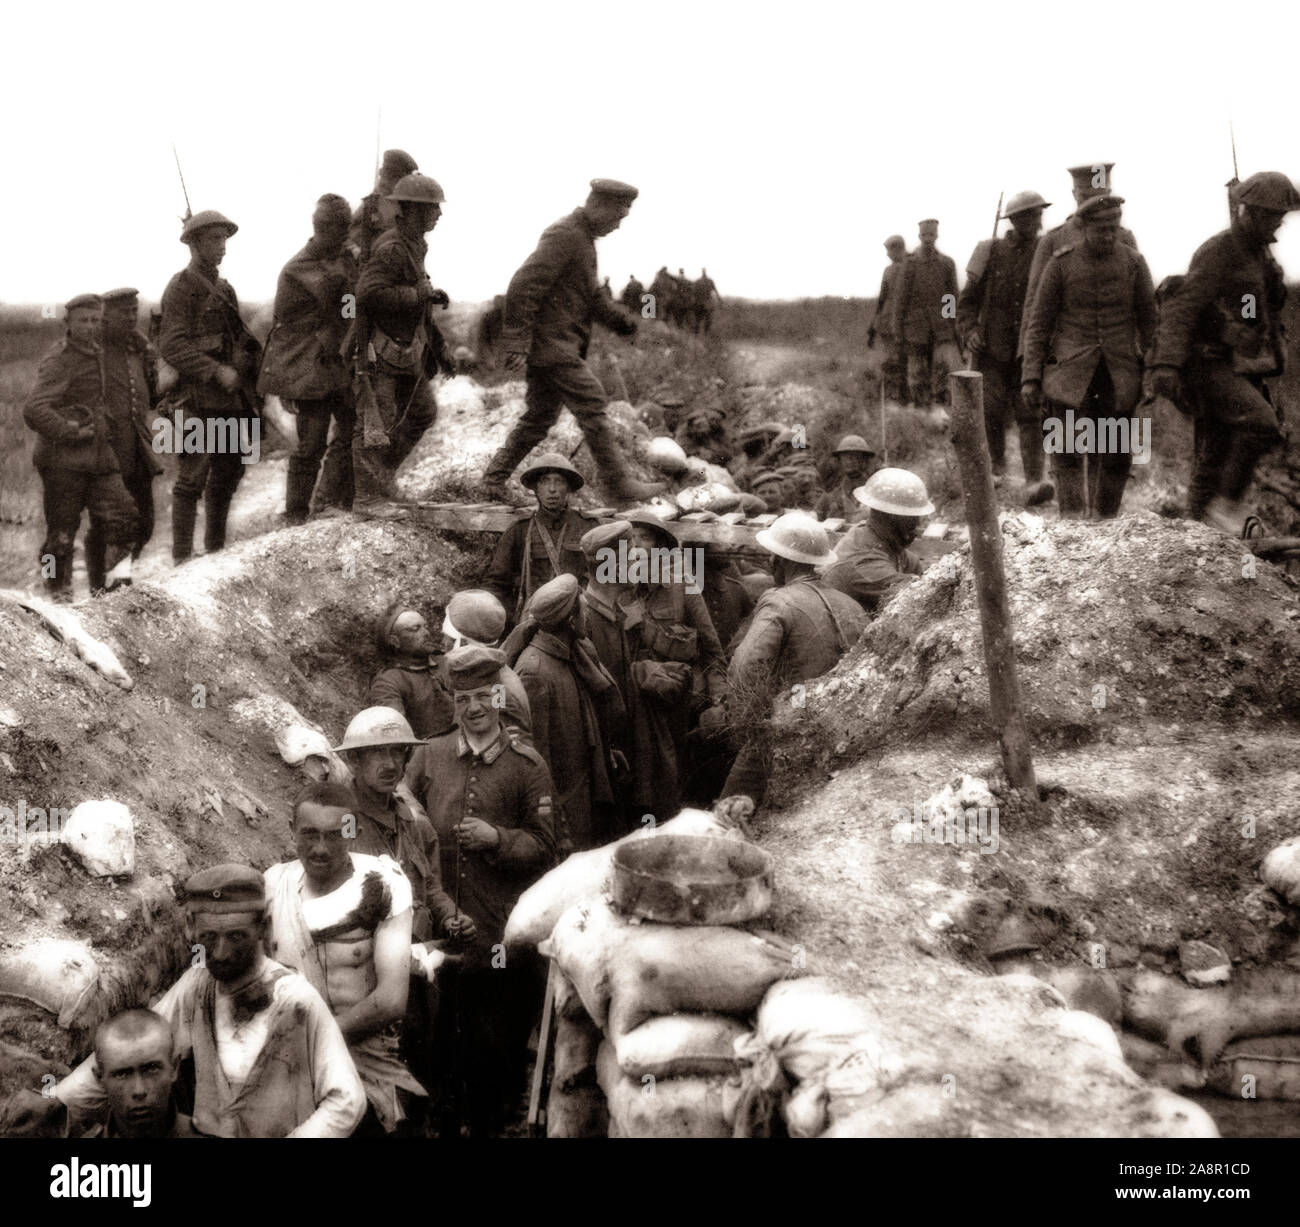 Les troupes britanniques aka Tommies, soulager les blessés et portés au cours de la bataille les troupes de l'offensive de la Somme, se sont battus par les armées de l'Empire britannique et français de la Troisième République contre l'Empire allemand. Il a eu lieu entre le 1 juillet et 18 novembre 1916 des deux côtés de la partie supérieure du fleuve de la Somme en France. Dans la bataille, la plus grande bataille de la guerre de l'ouest du front, plus de trois millions d'hommes se sont battus et un million d'hommes ont été blessés ou tués, ce qui en fait l'une des batailles les plus sanglantes de l'histoire humaine. Banque D'Images